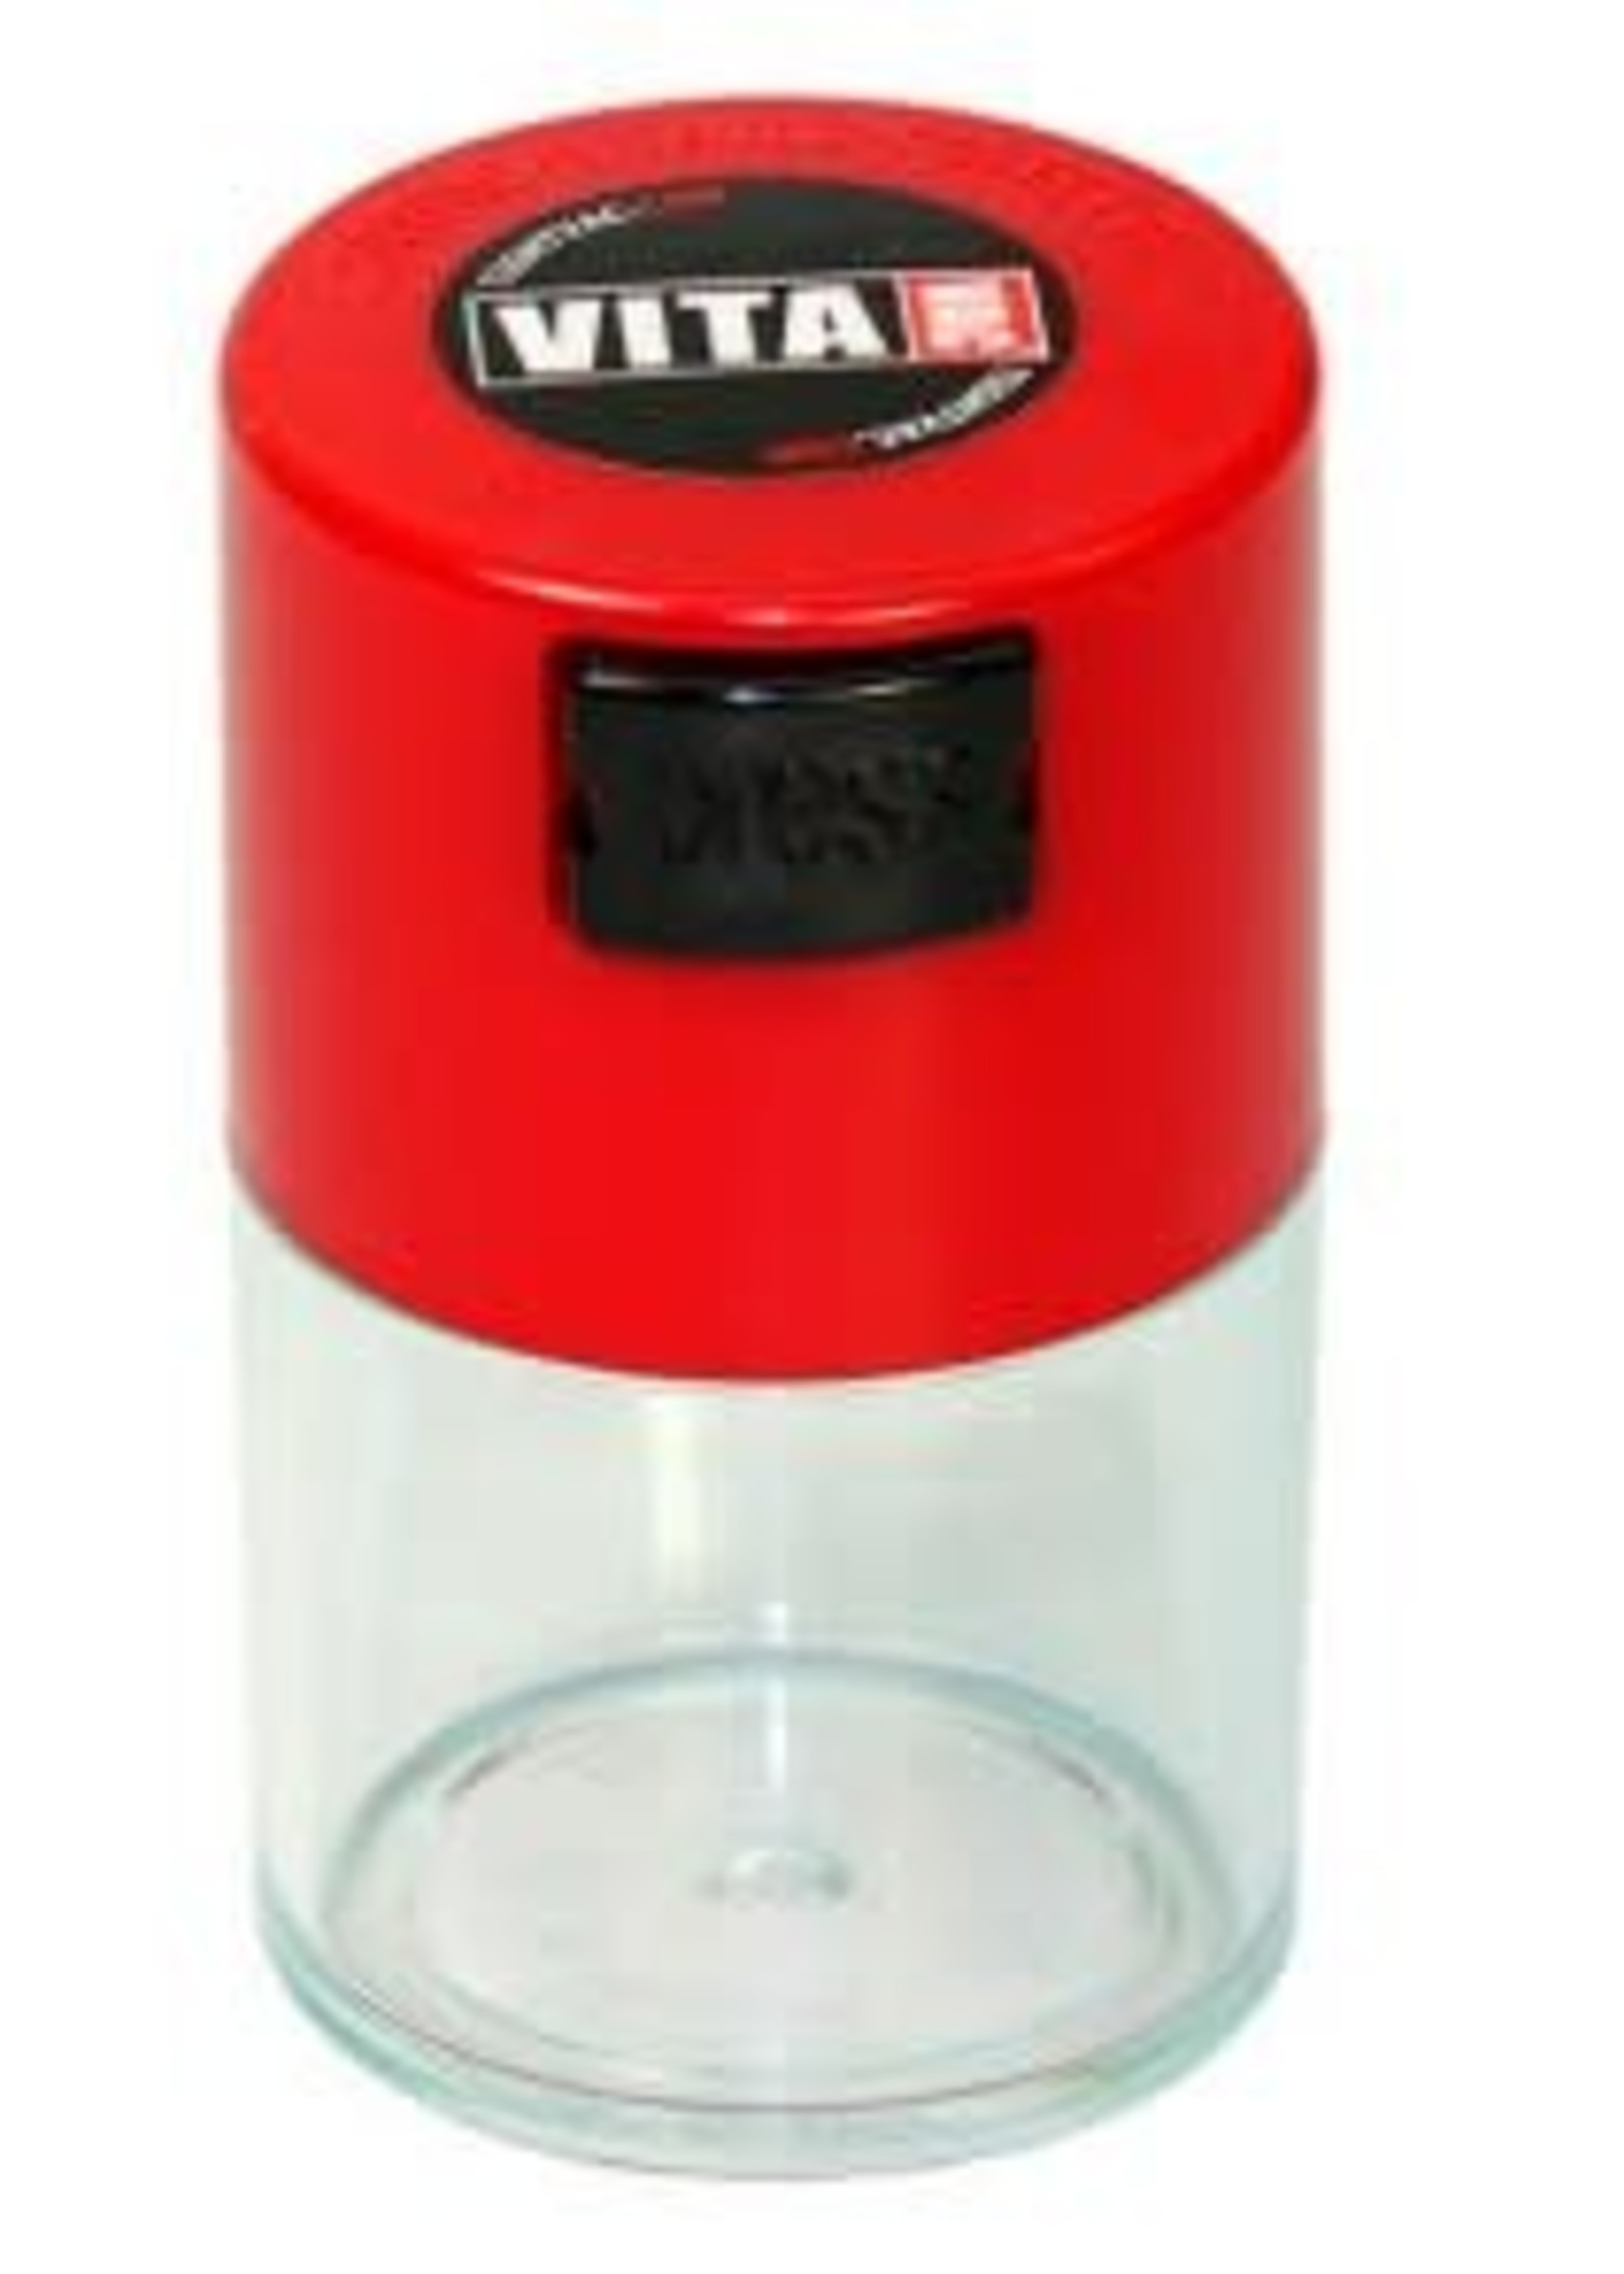 VitaVac 0.06 liter Red Cap/Clear Body